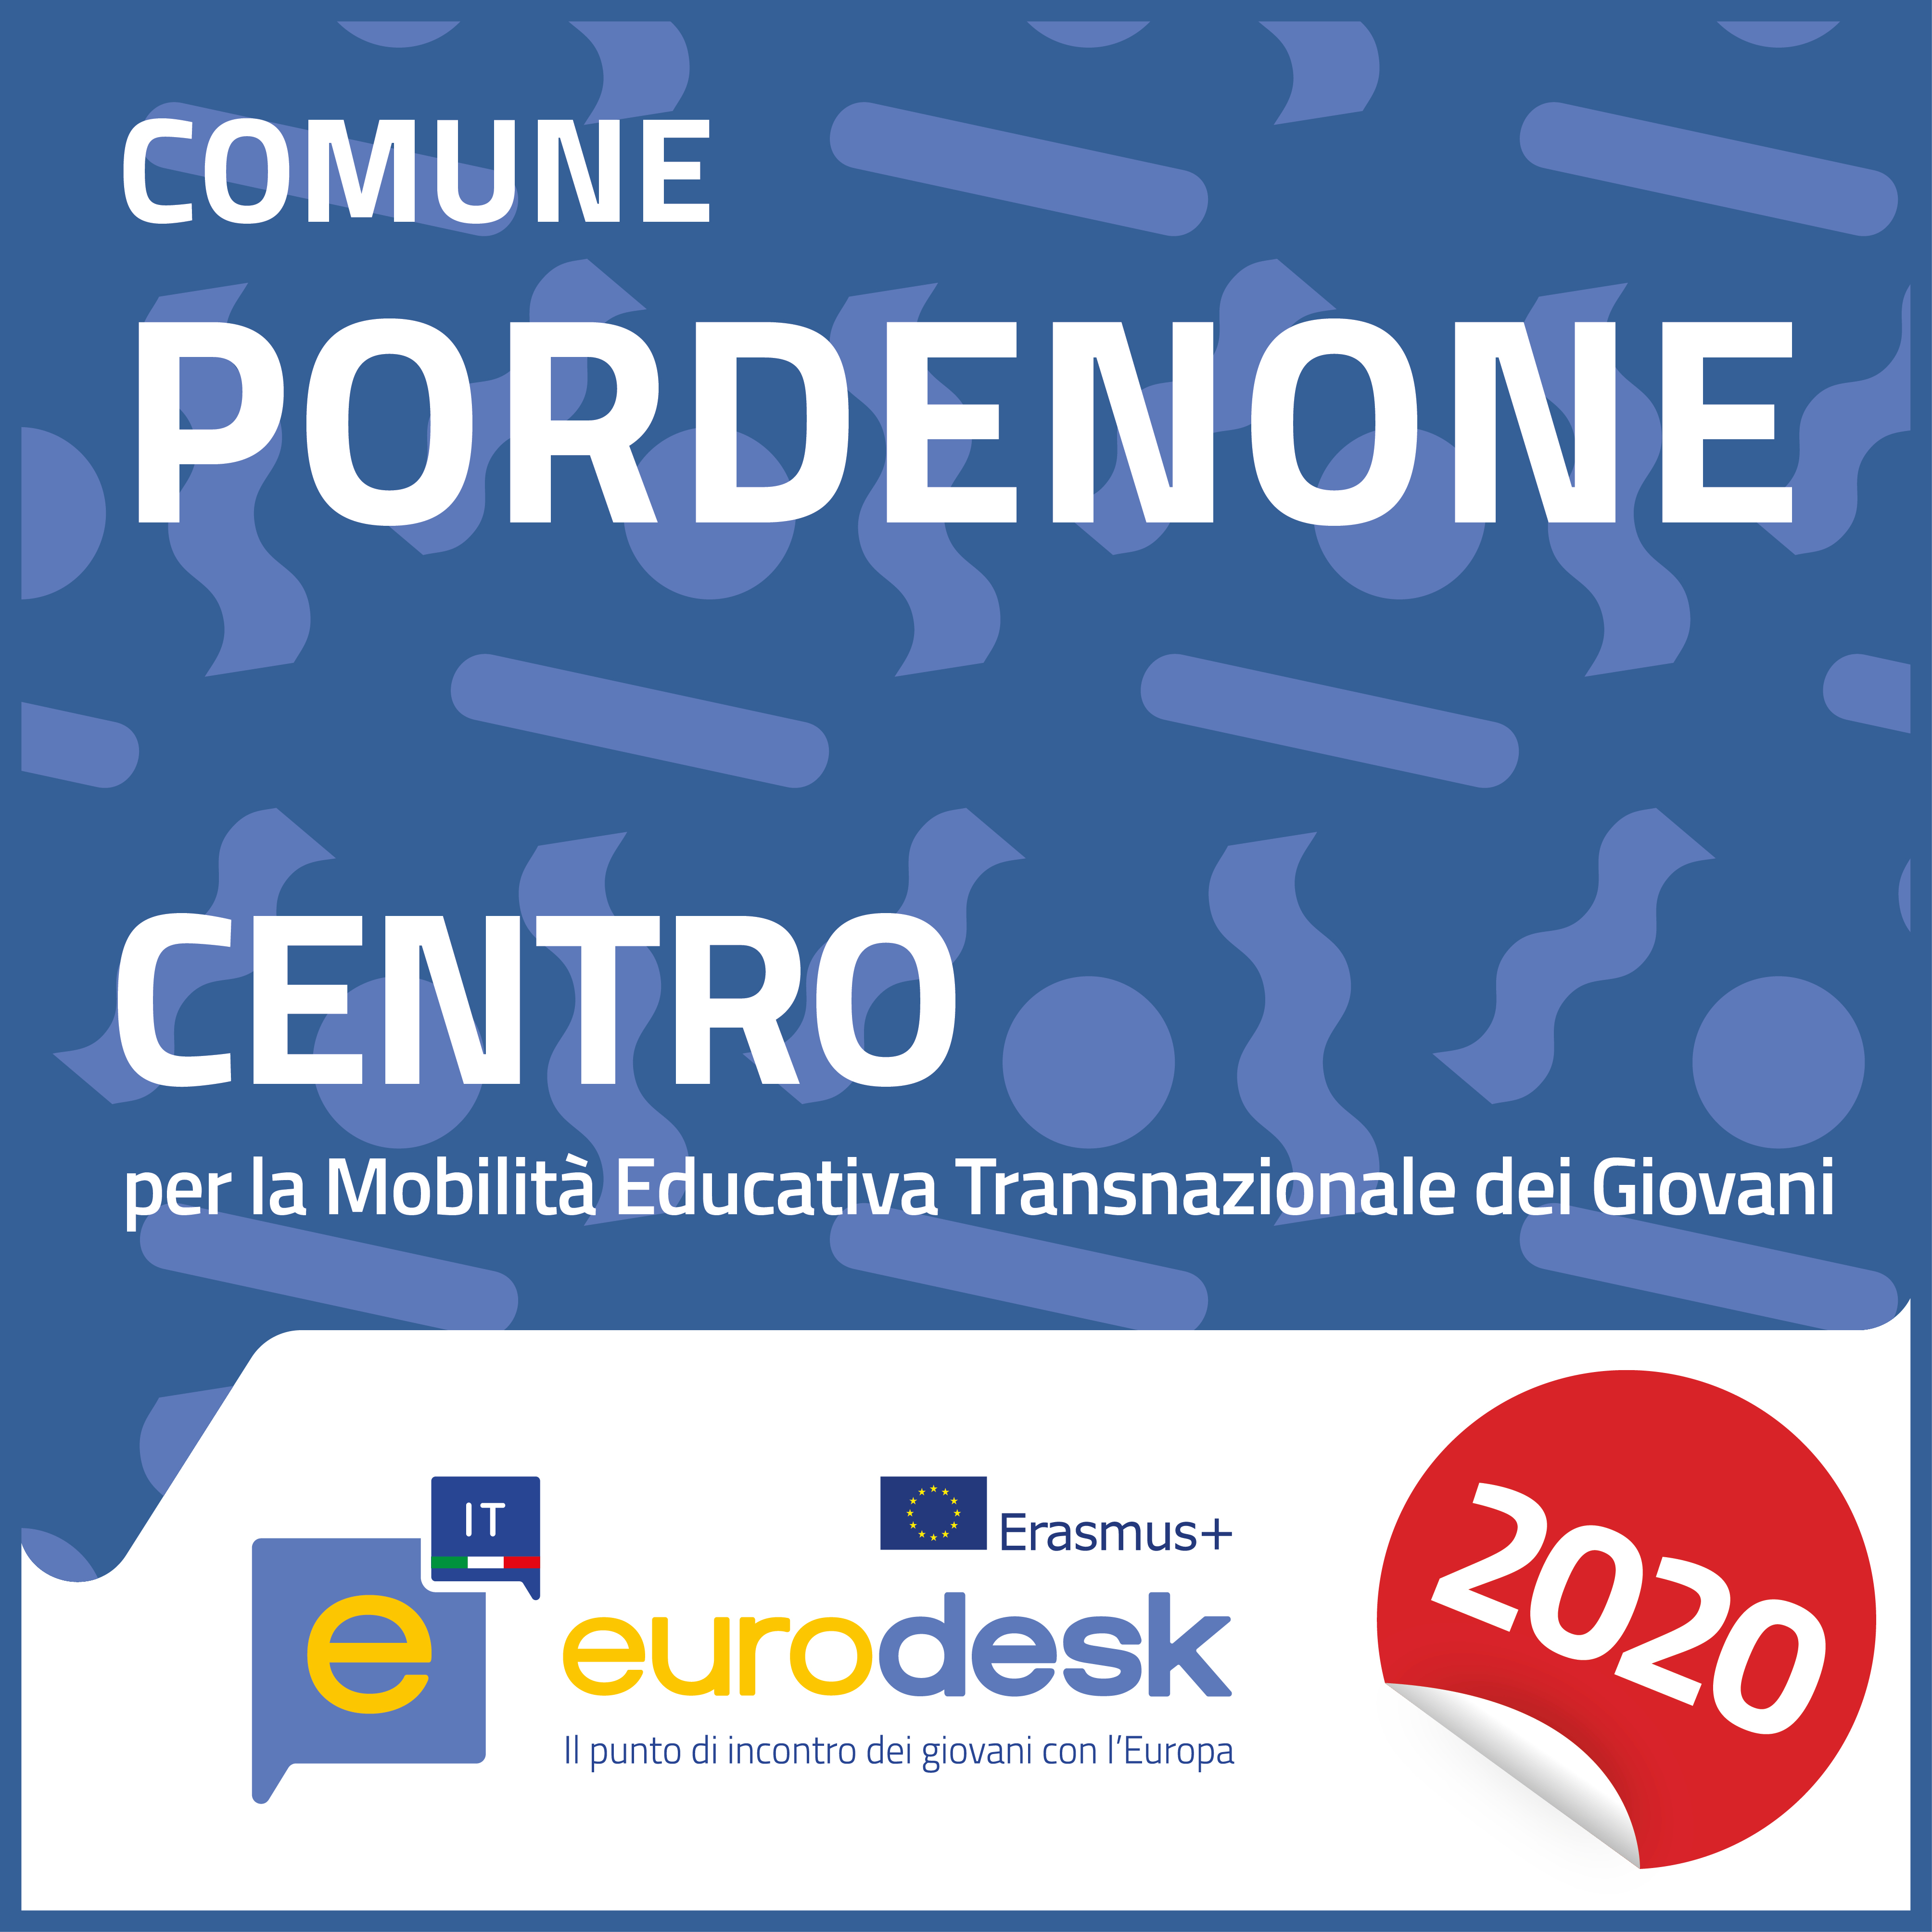 Centro_PORDENONE_Comune di Pordenone_2020_34x34.jpg